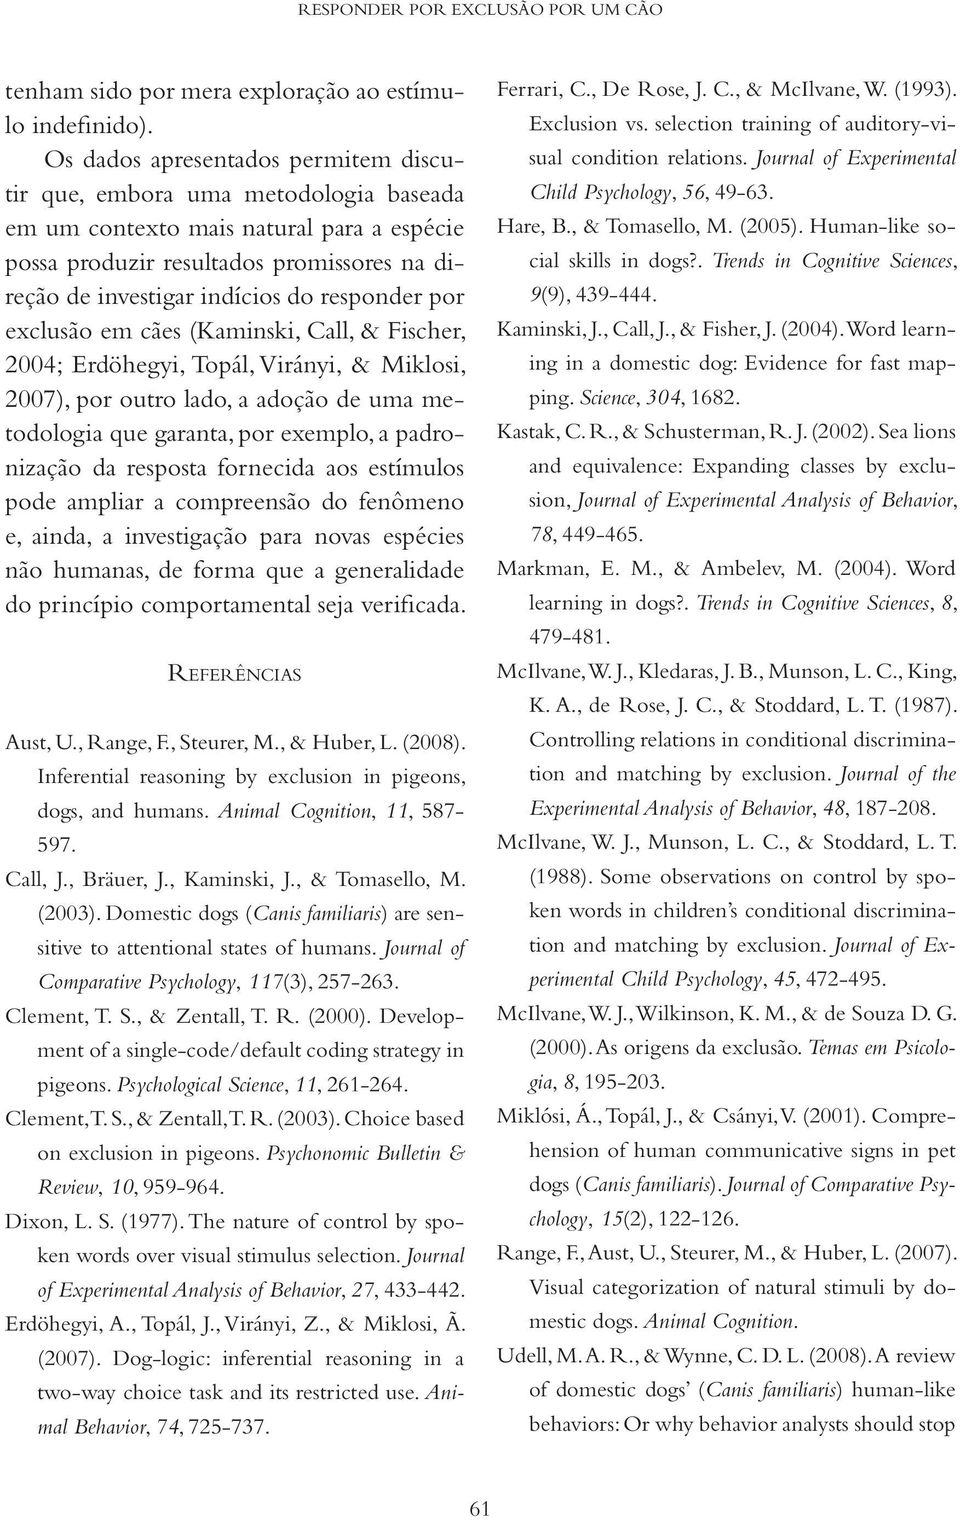 responder por exclusão em cães (Kaminski, Call, & Fischer, 2004; Erdöhegyi, Topál, Virányi, & Miklosi, 2007), por outro lado, a adoção de uma metodologia que garanta, por exemplo, a padronização da